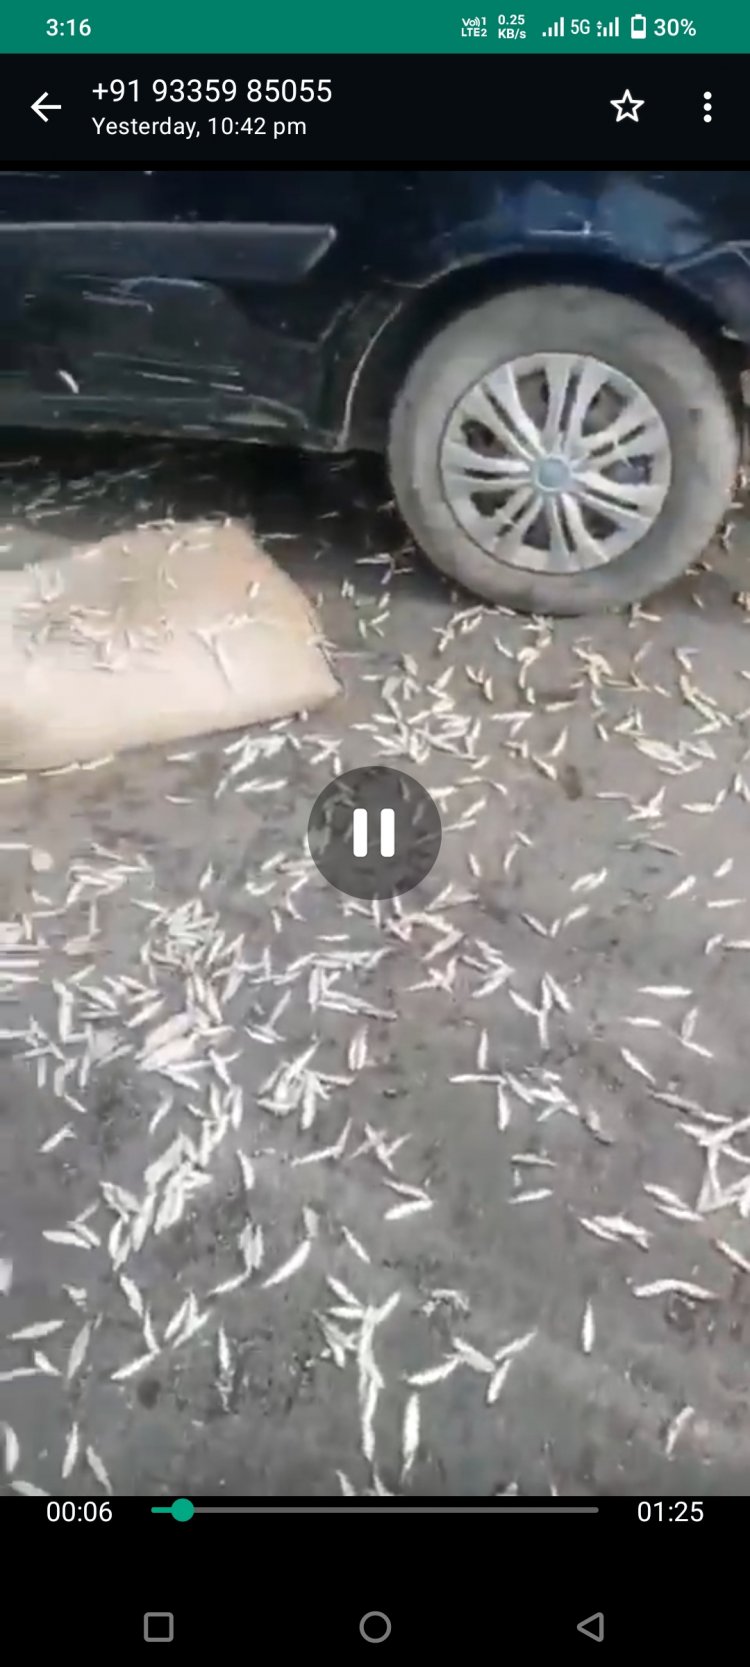 हुआ एक्सीडेंट वाहन से सड़क पर बिखरी मछलियां।*